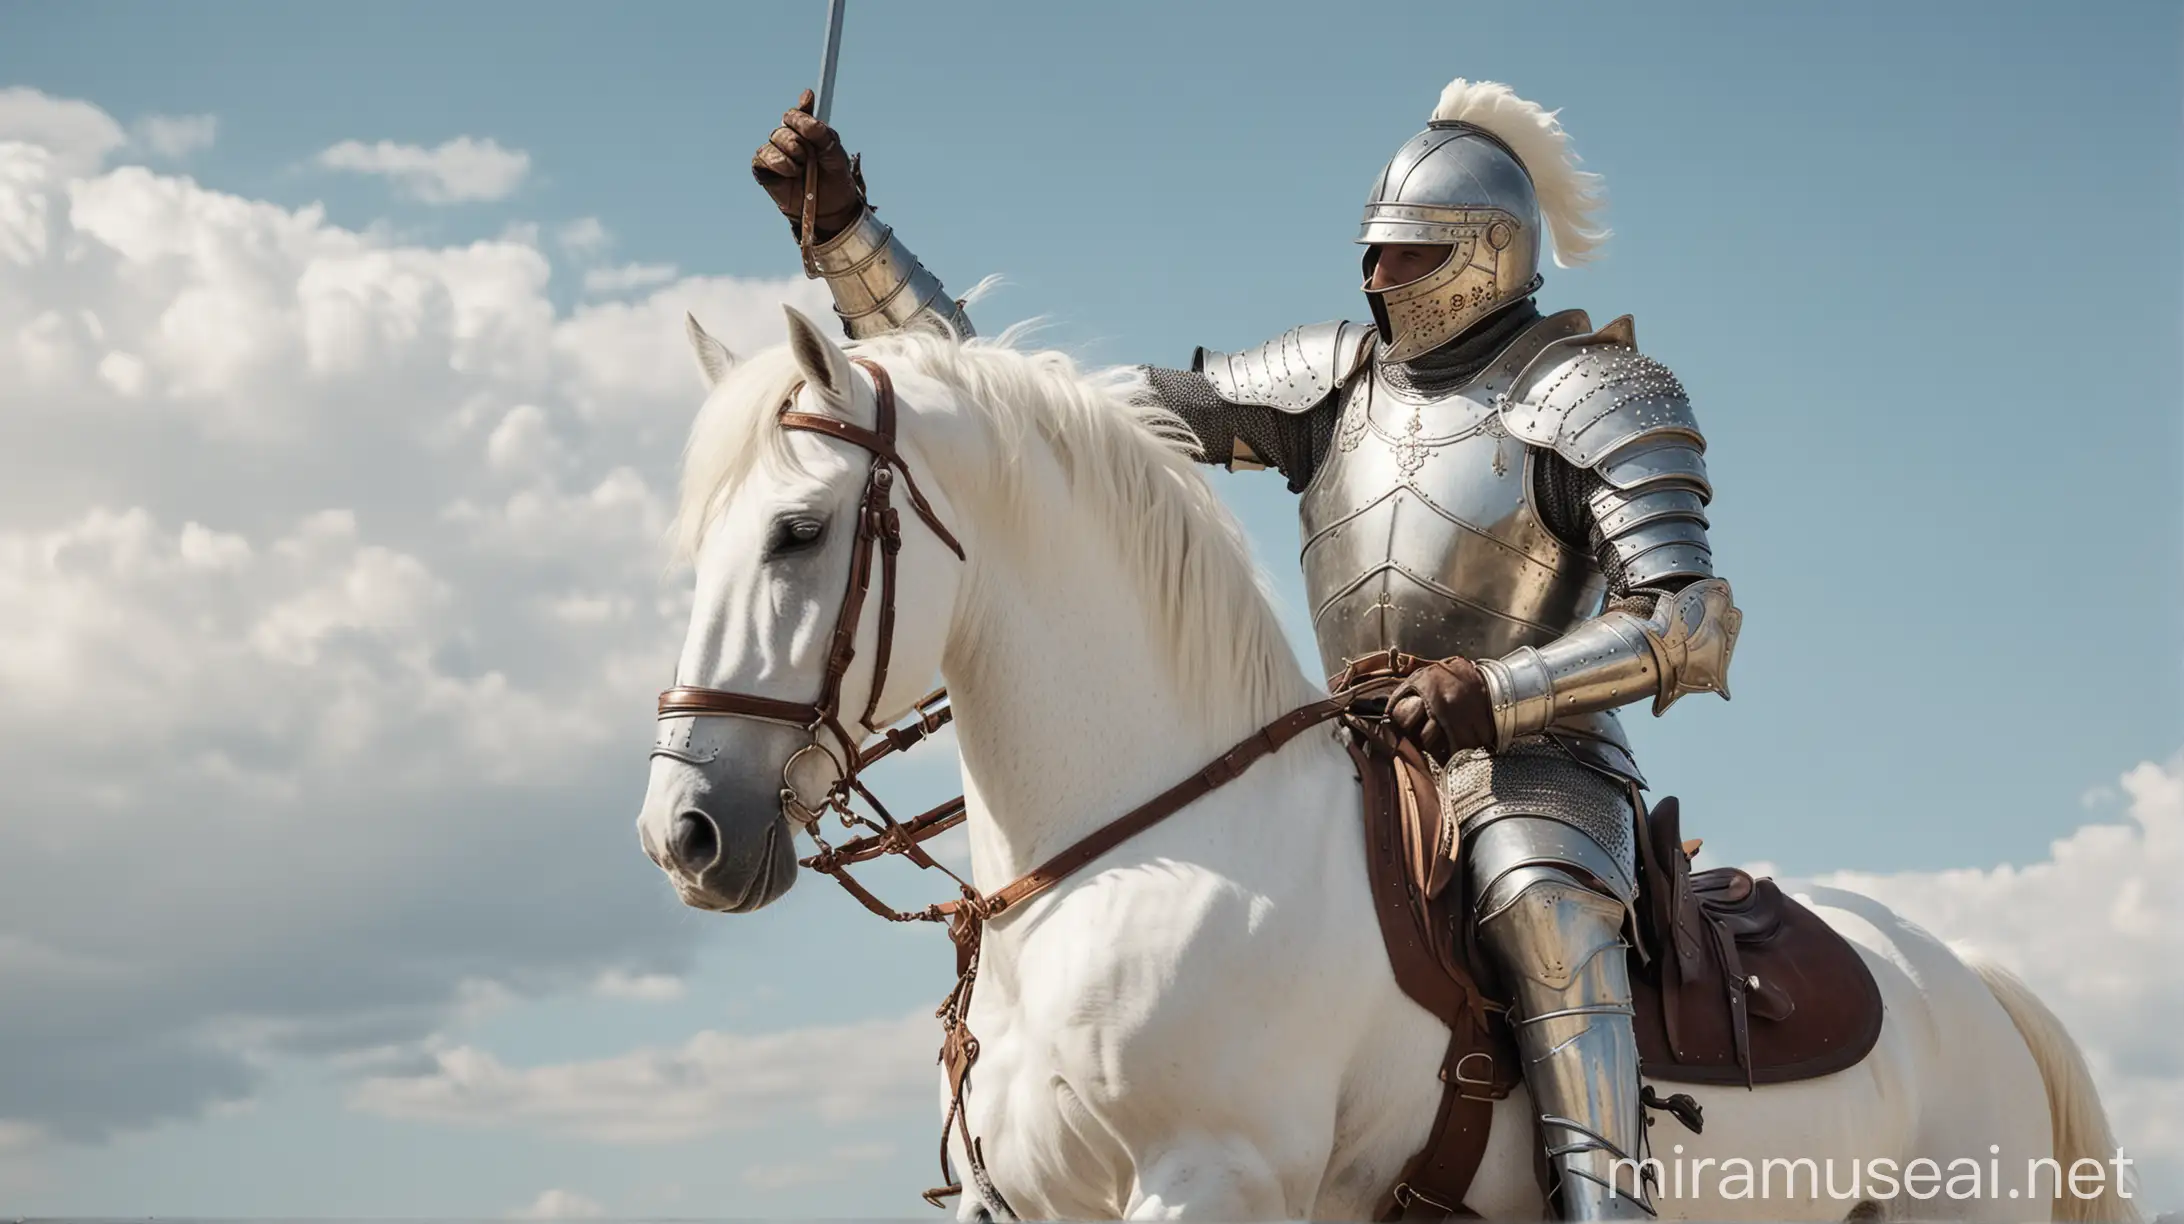 Noble Knight on White Stallion Reverently Saluting the Sky